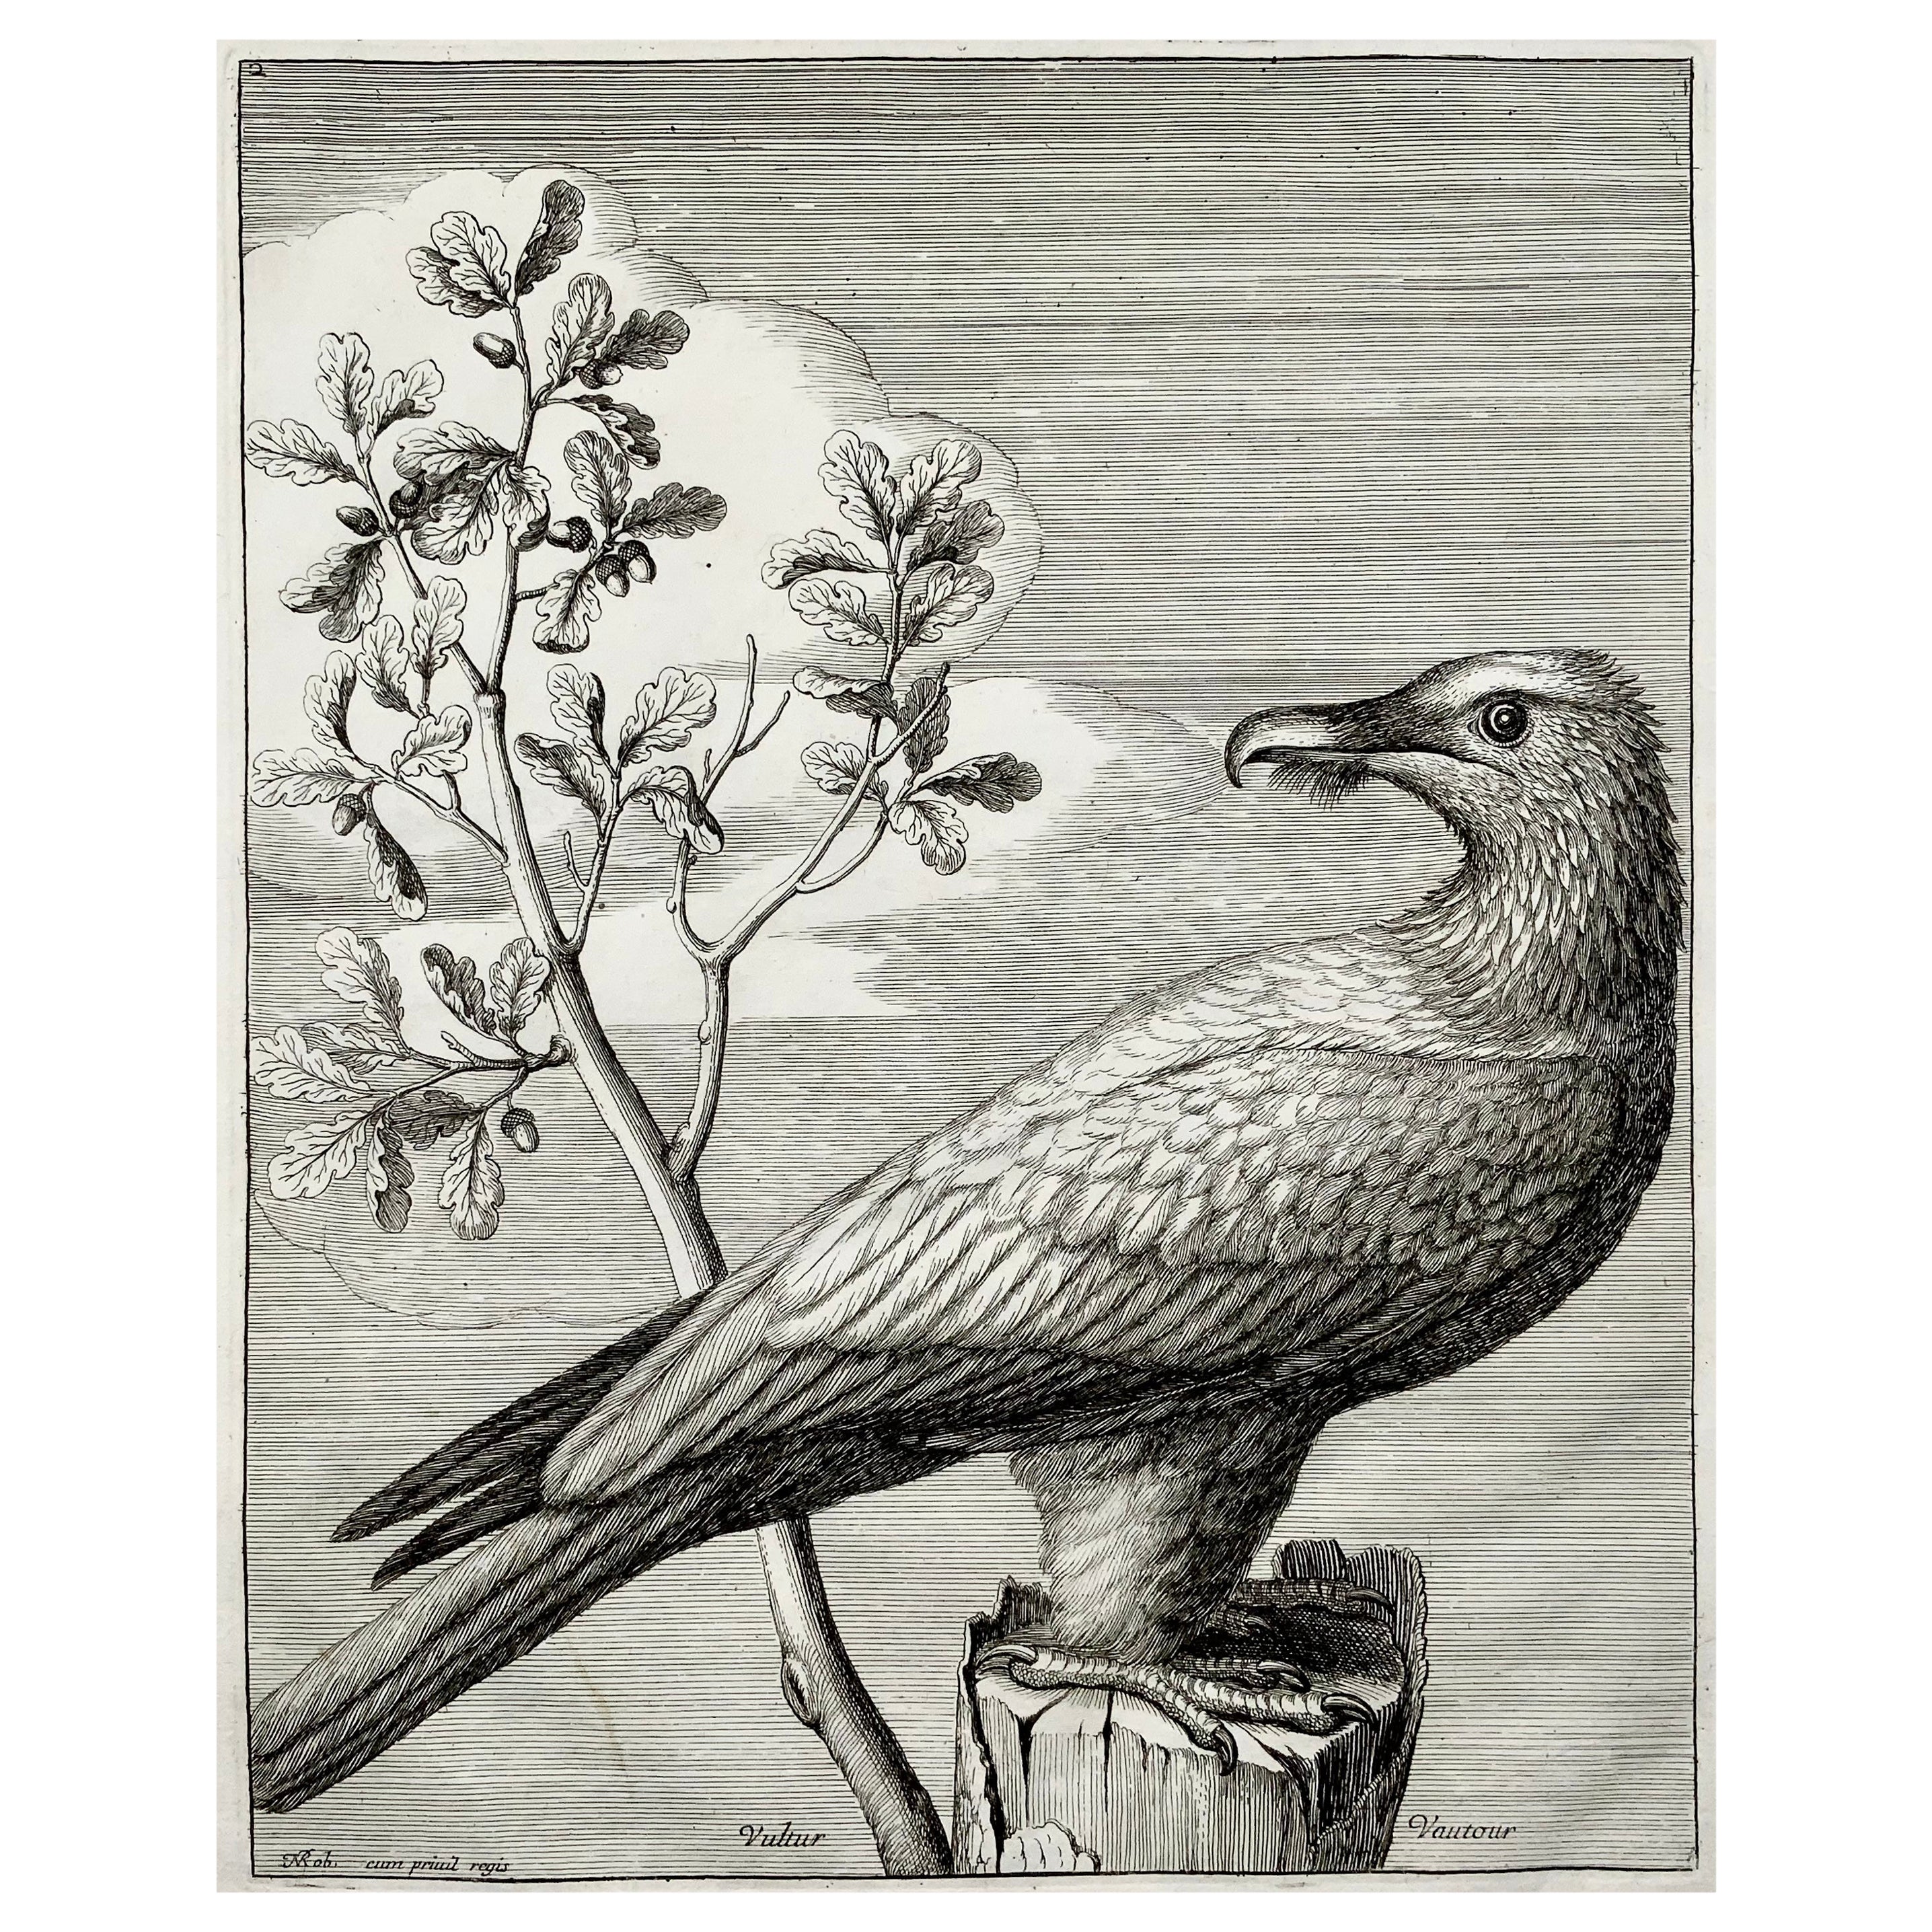 Vulture, Vogel der Beute, Nicolas Robert, Folio-Radierung